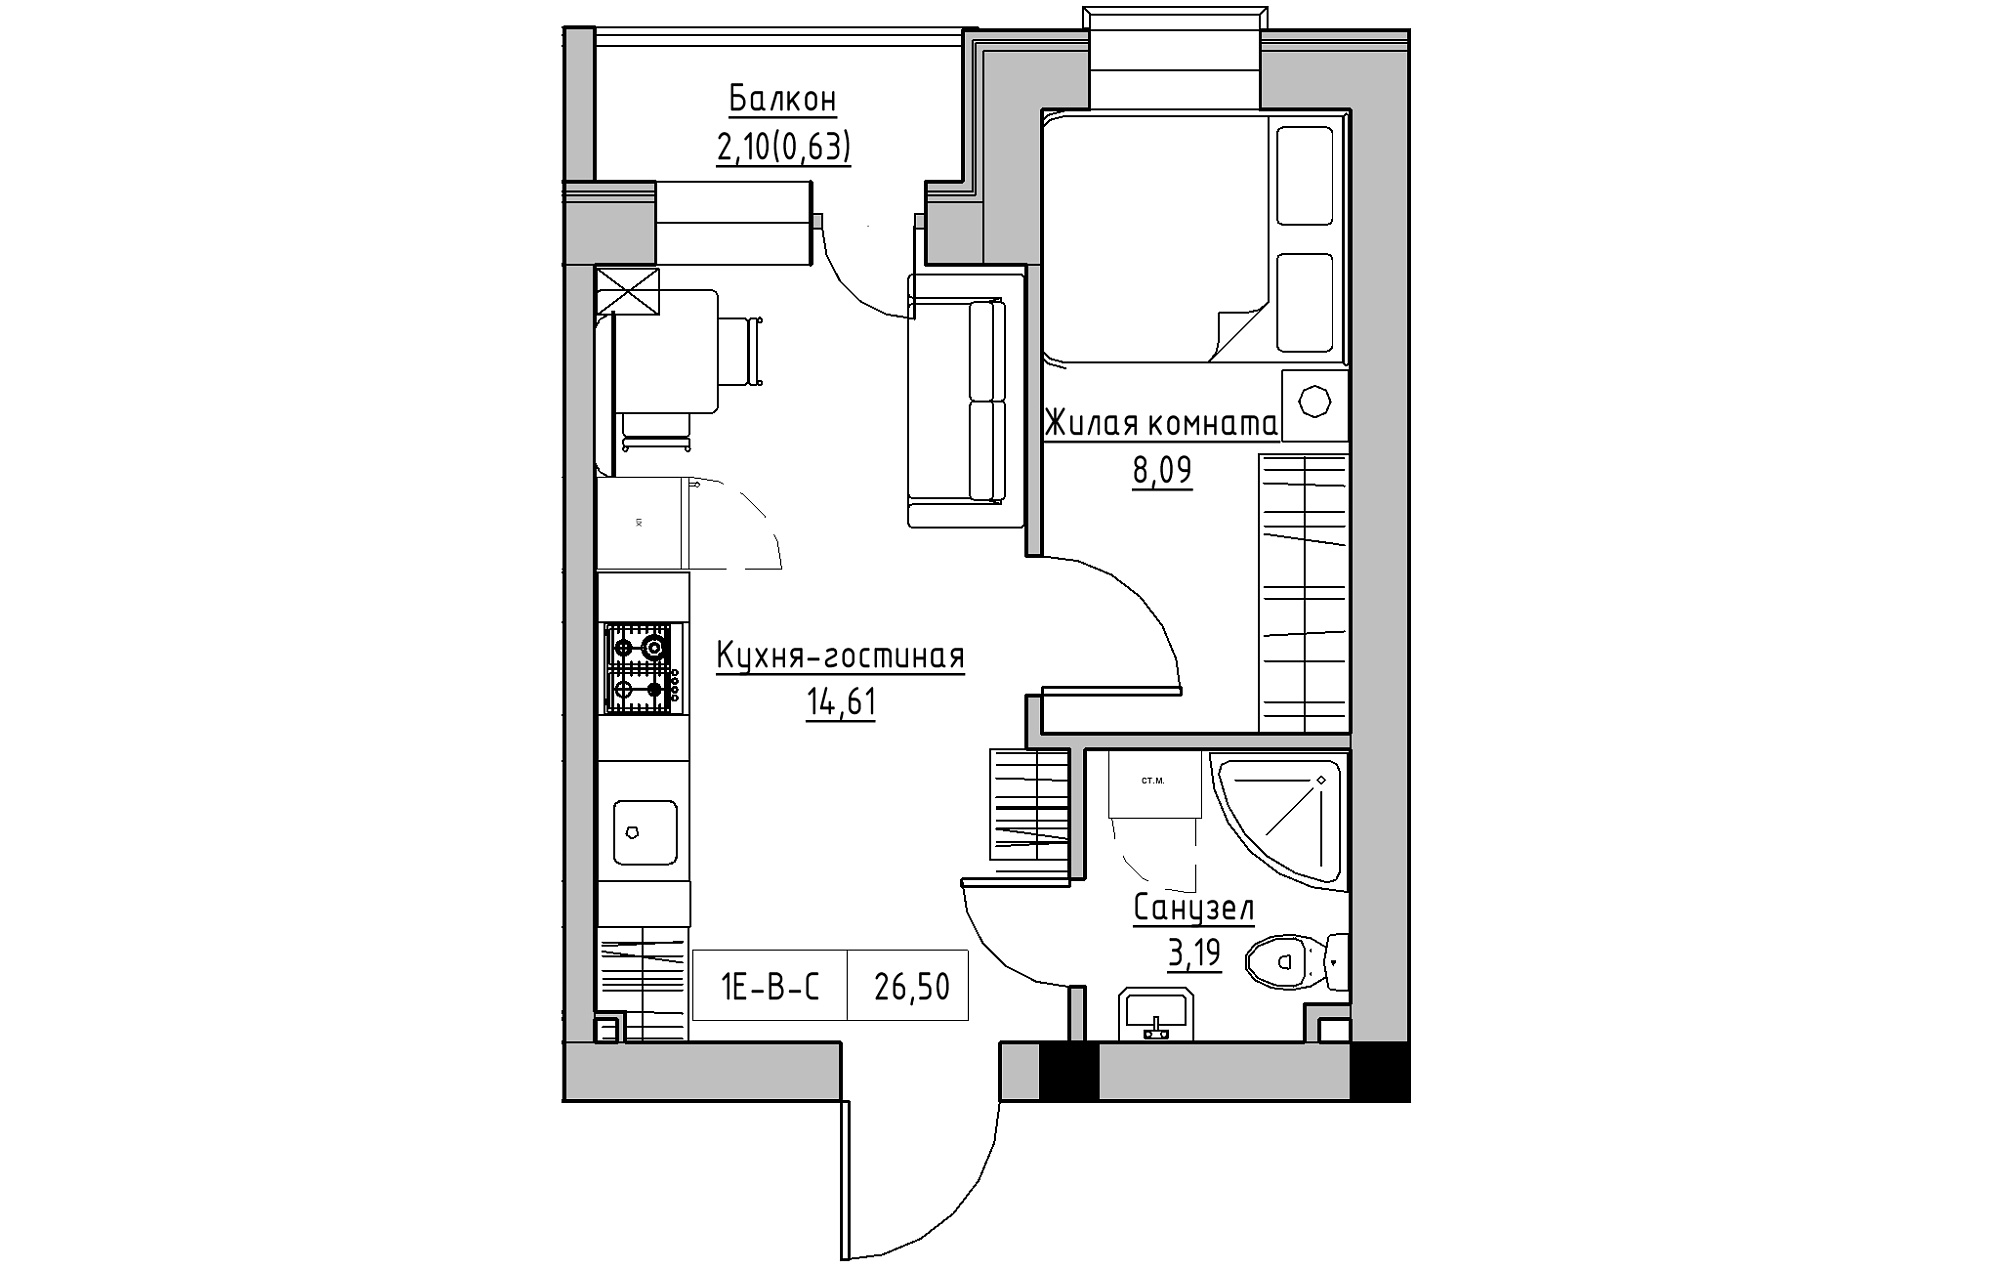 Планування 1-к квартира площею 26.5м2, KS-018-05/0008.